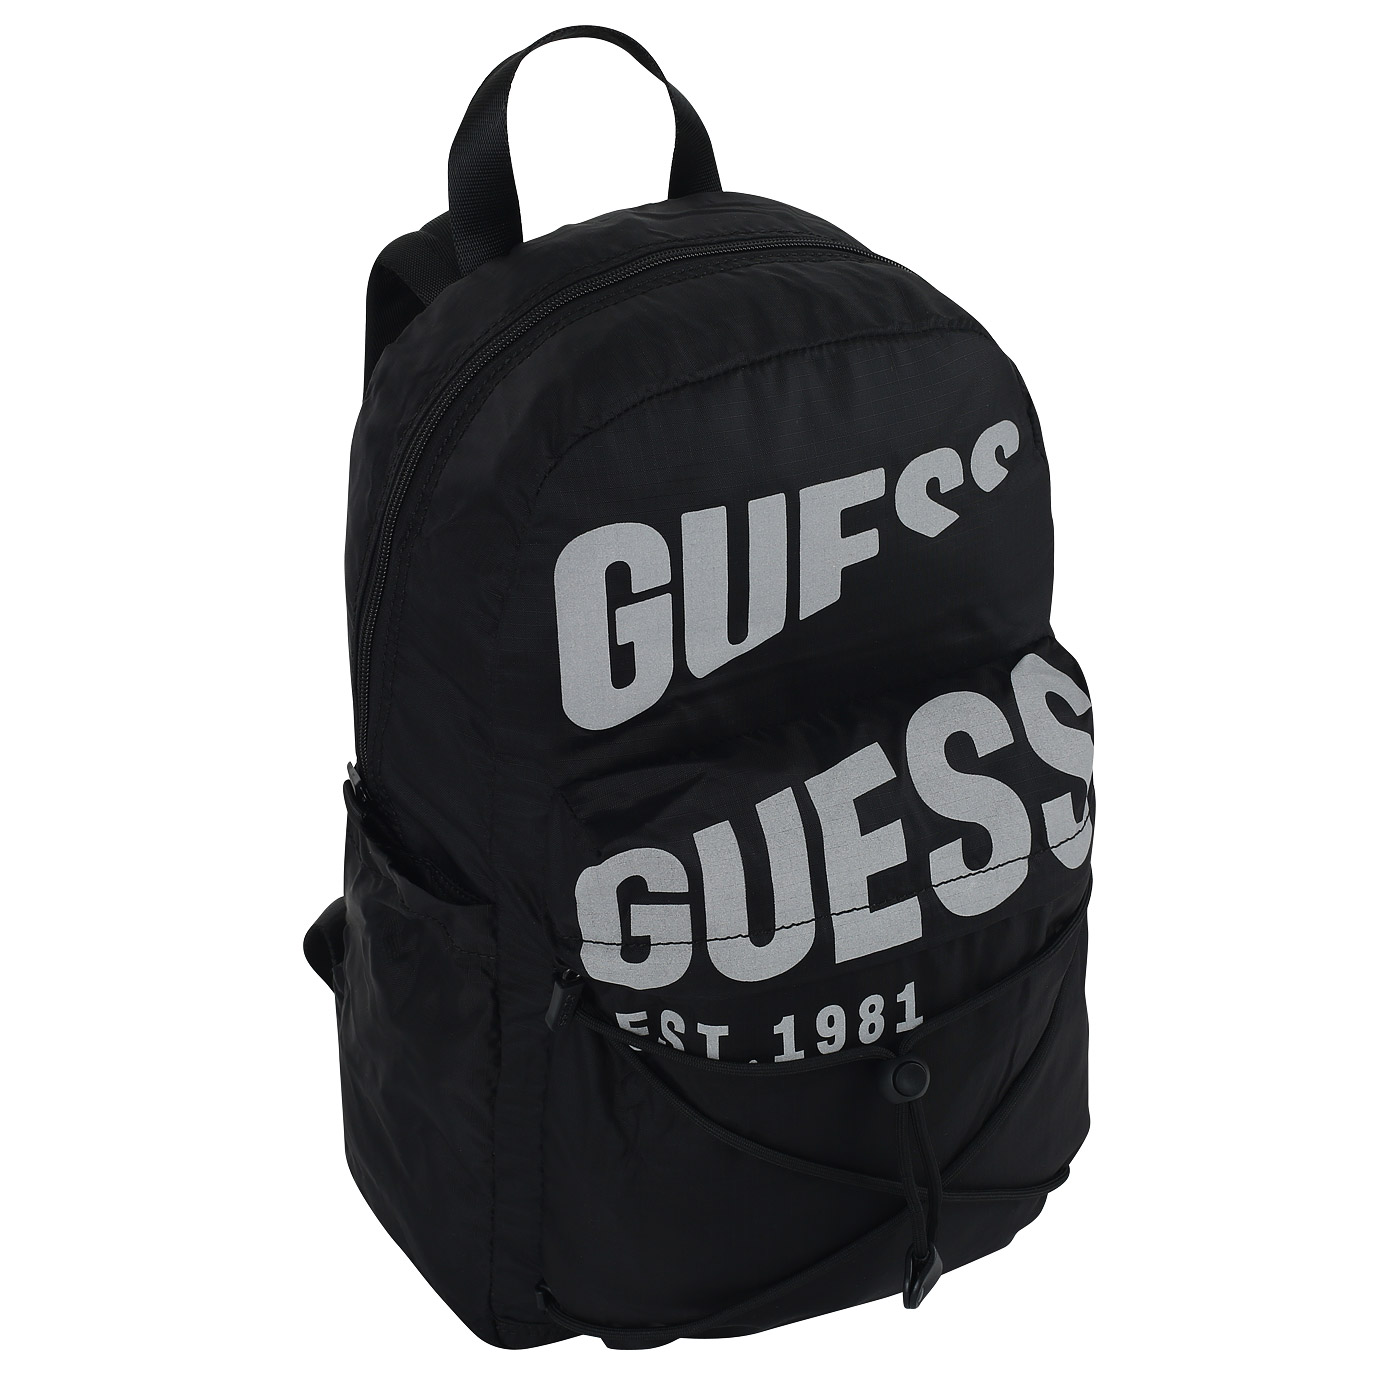 Нейлоновый рюкзак Guess Elvis